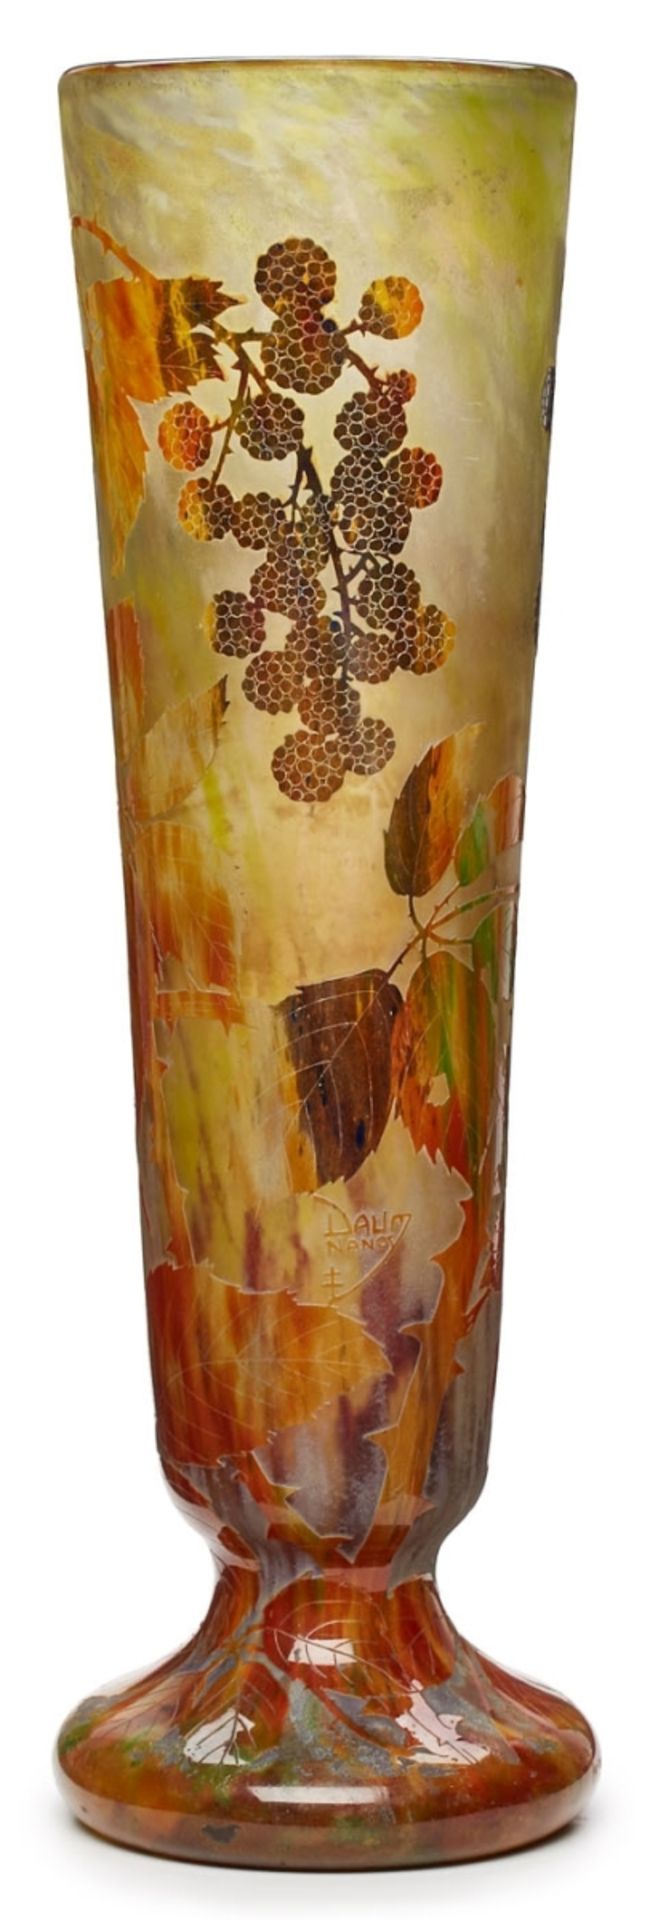 Gr. Vase mit Brombeer-Dekor, Jugendstil, - Bild 2 aus 2